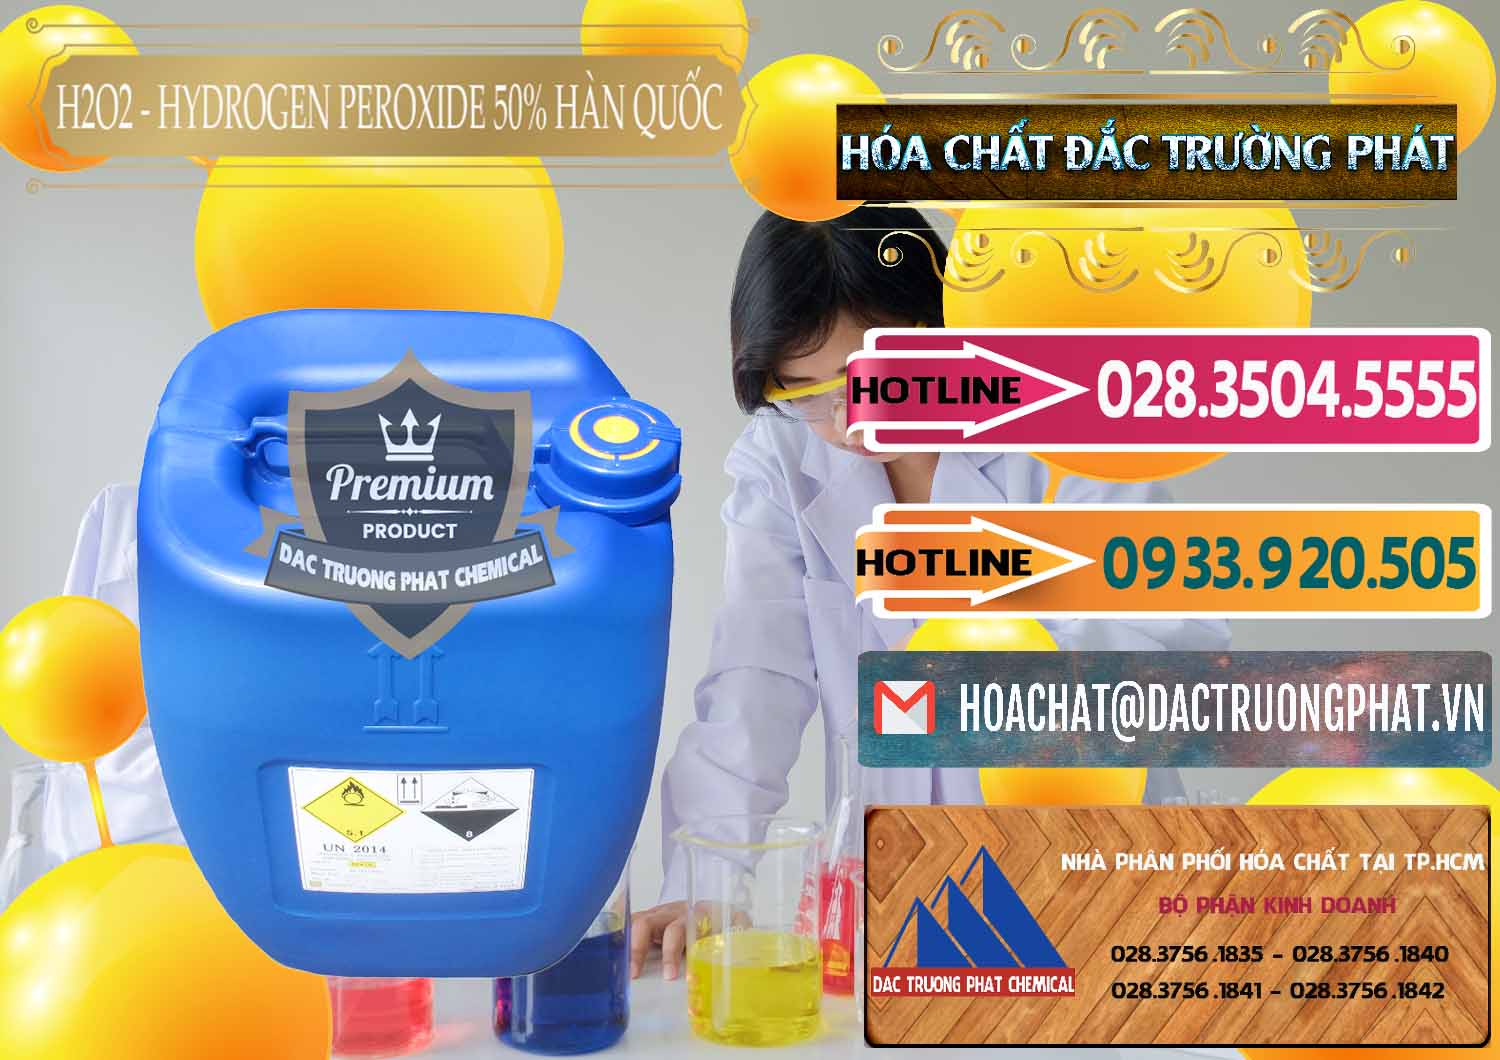 Công ty chuyên kinh doanh và bán H2O2 - Hydrogen Peroxide 50% Taekwang Hàn Quốc Korea - 0071 - Nơi chuyên phân phối ( bán ) hóa chất tại TP.HCM - dactruongphat.vn